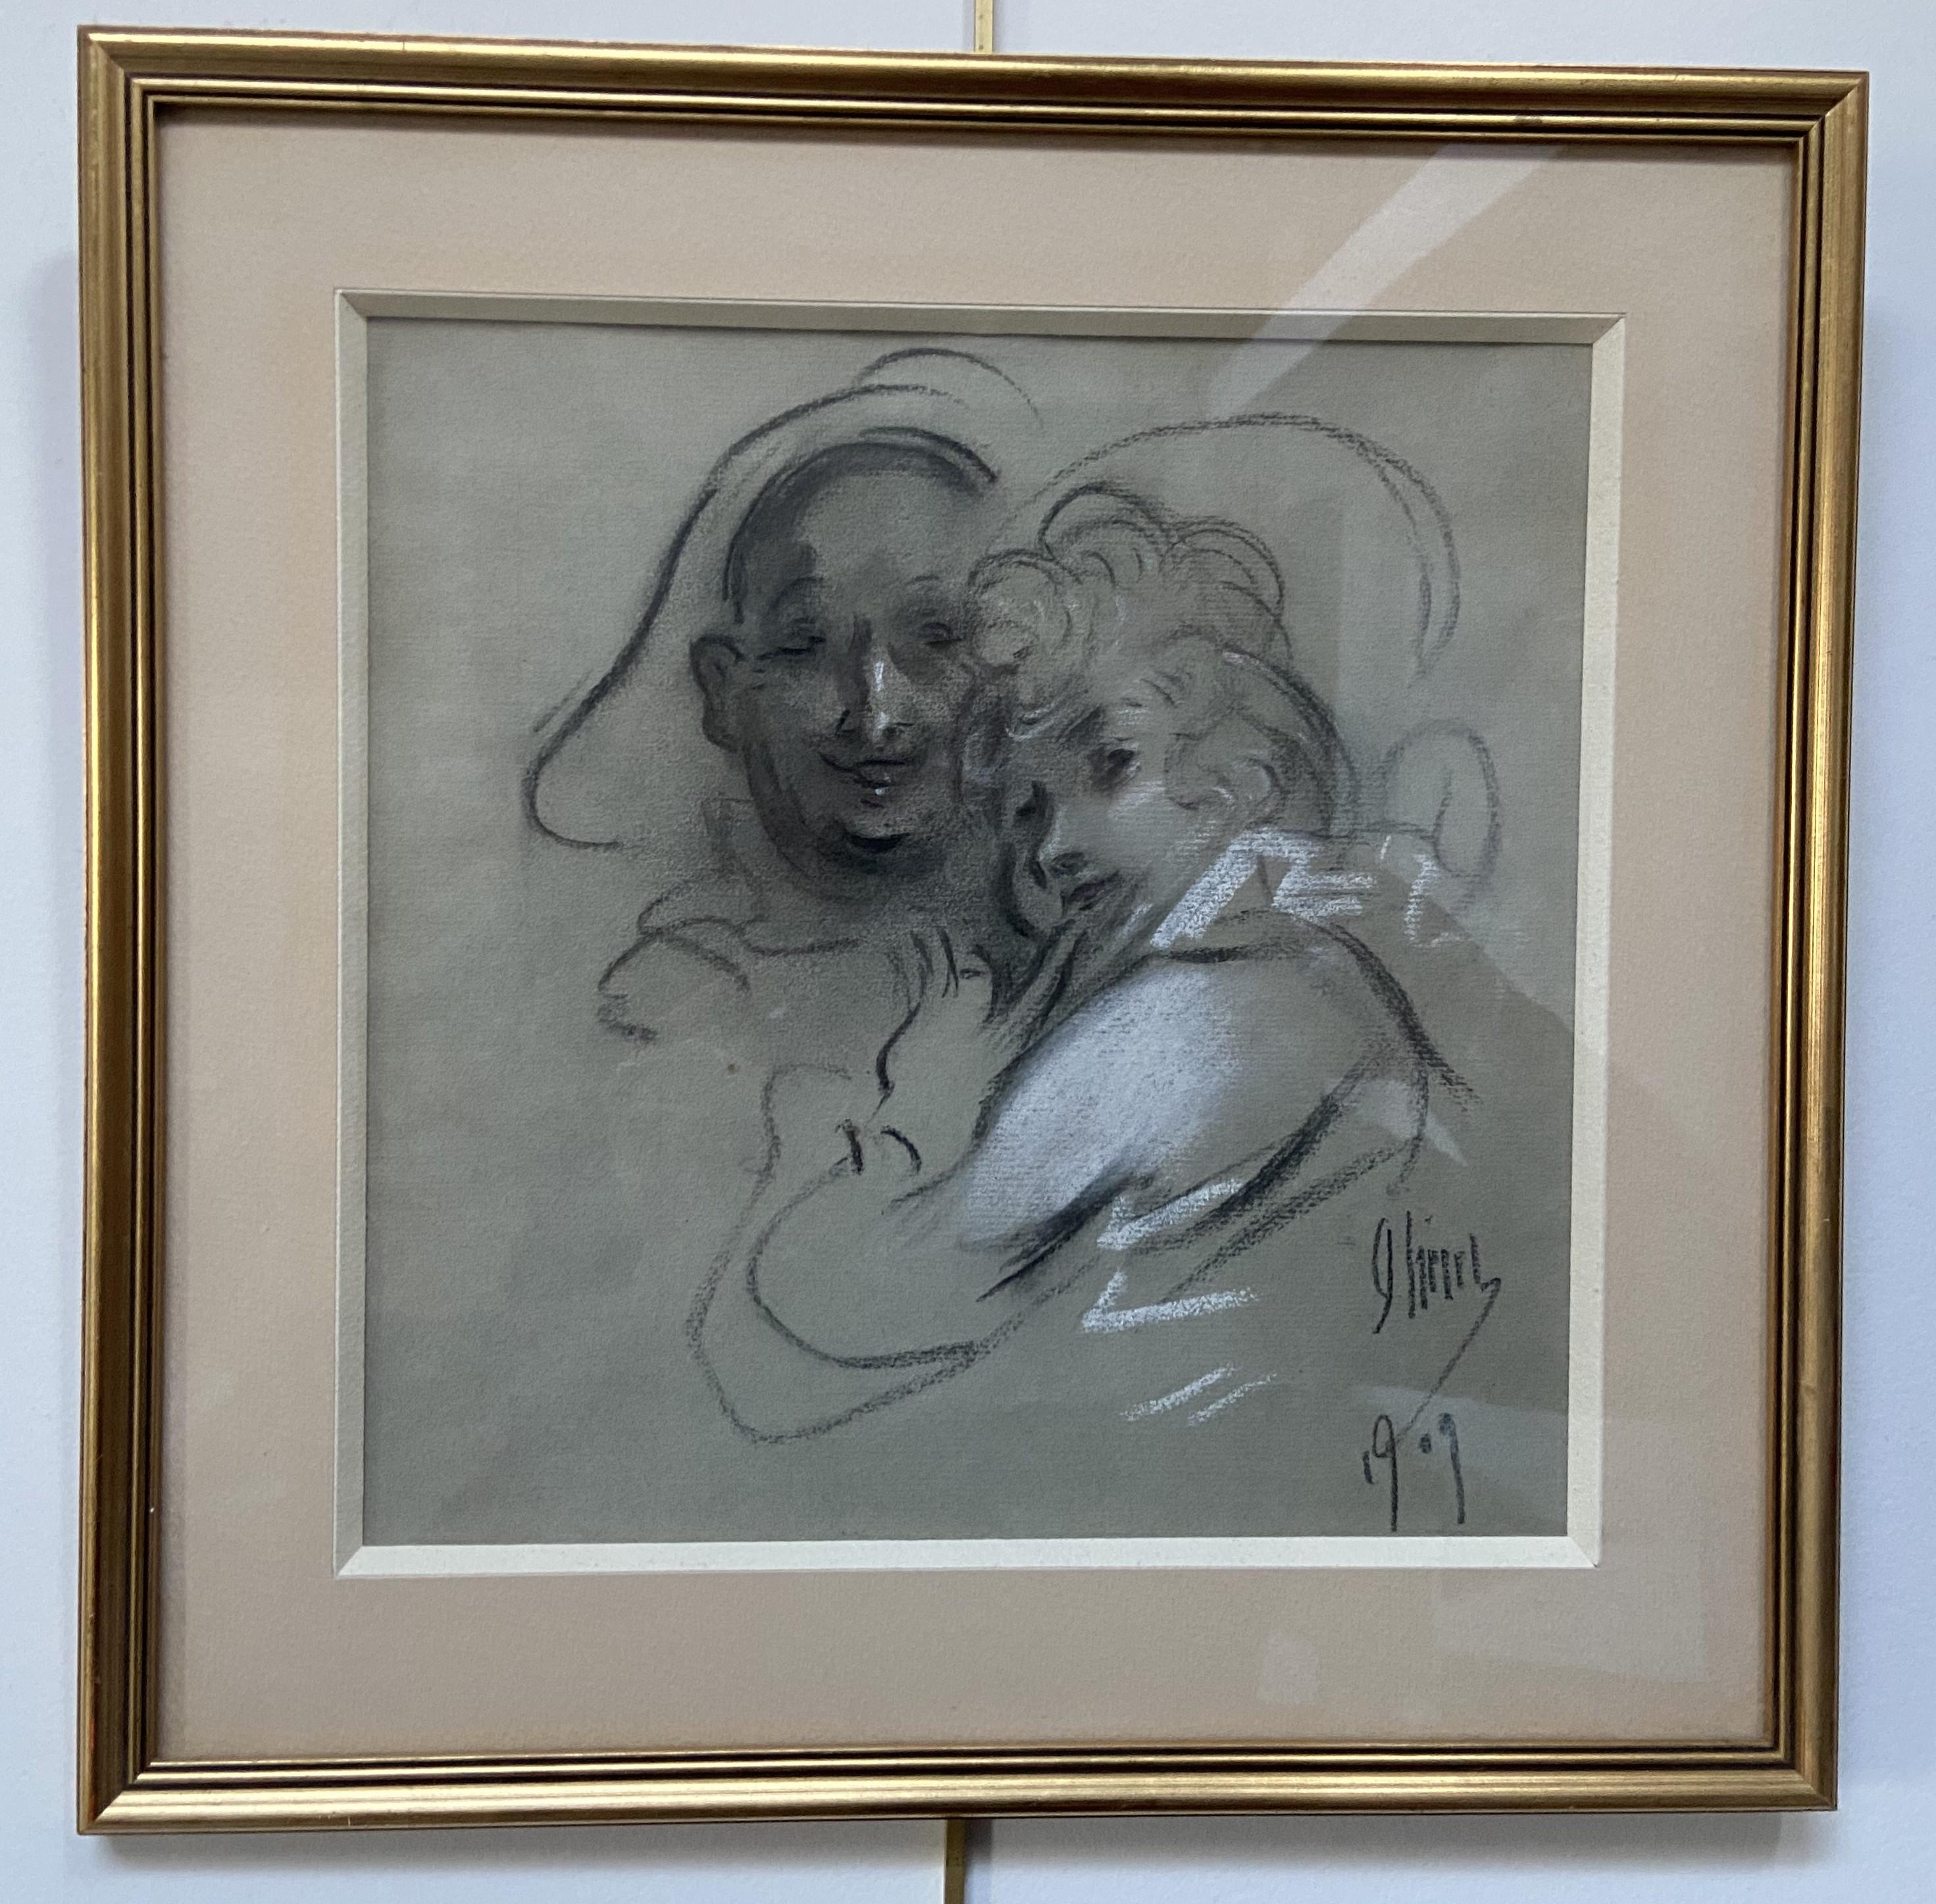 Jules Cheret (1836-1932) 
Un couple, 1909
signé et daté en bas à droite
Fusain  et des rehauts de craie blanche
23 x 23 cm
Encadré sous verre : 33,8 x 33,8 cm

Cette œuvre est très représentative de l'art de Jules Chéret, plein de délicatesse et de